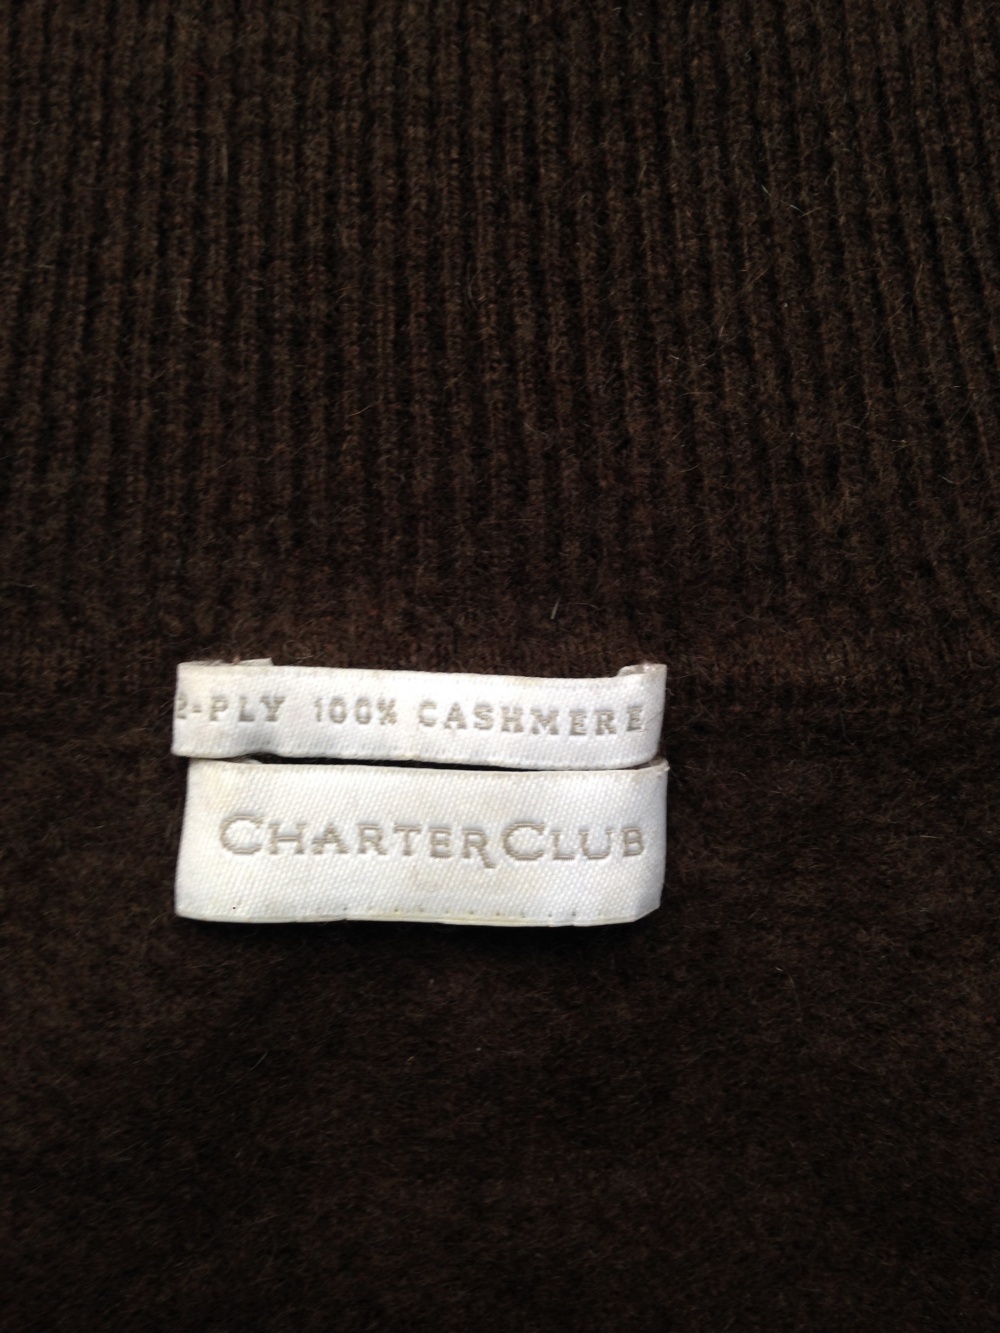 Свитер " Charter Club ", 44-46 размер